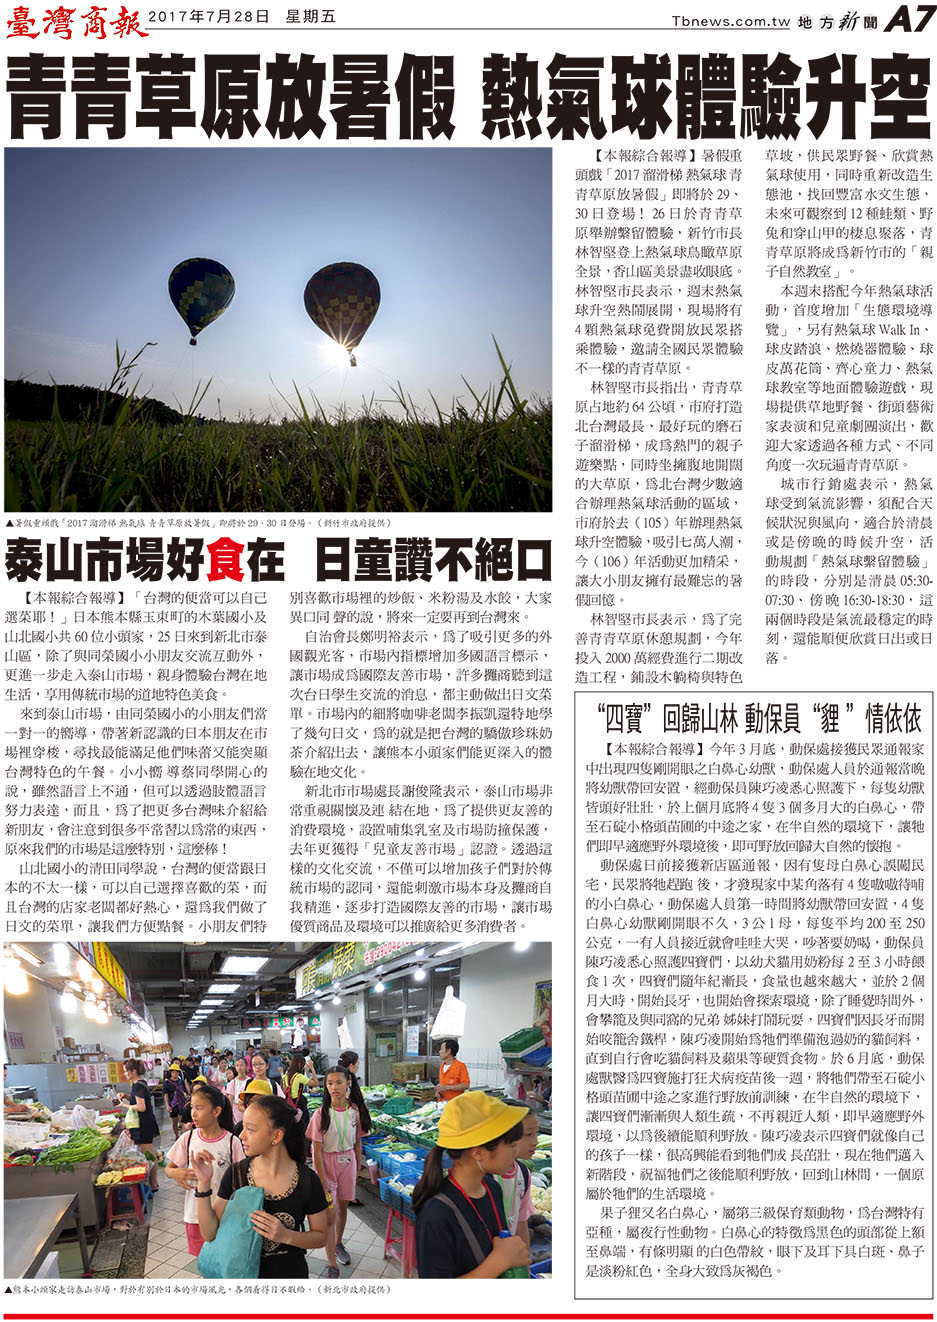 青青草原放暑假 熱氣球體驗升空